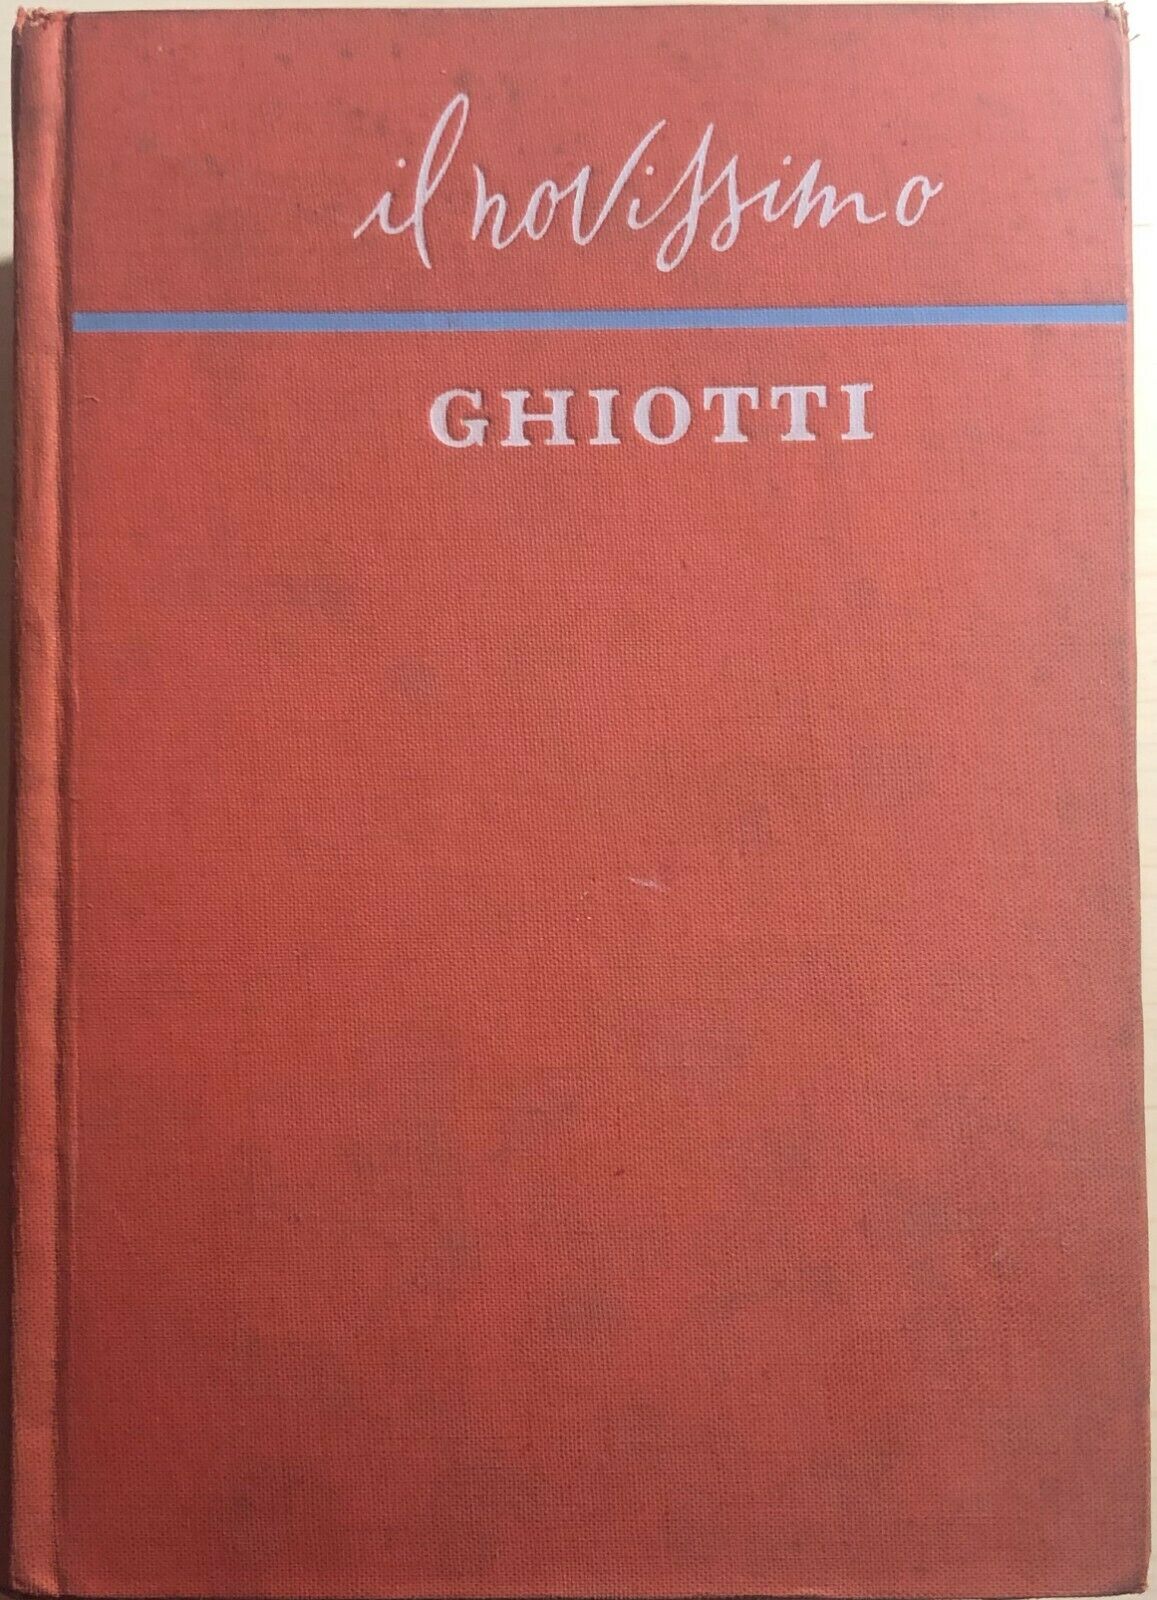 Il nuovissimo Ghiotti dizionario Francese italiano - italiano francese di Giulio